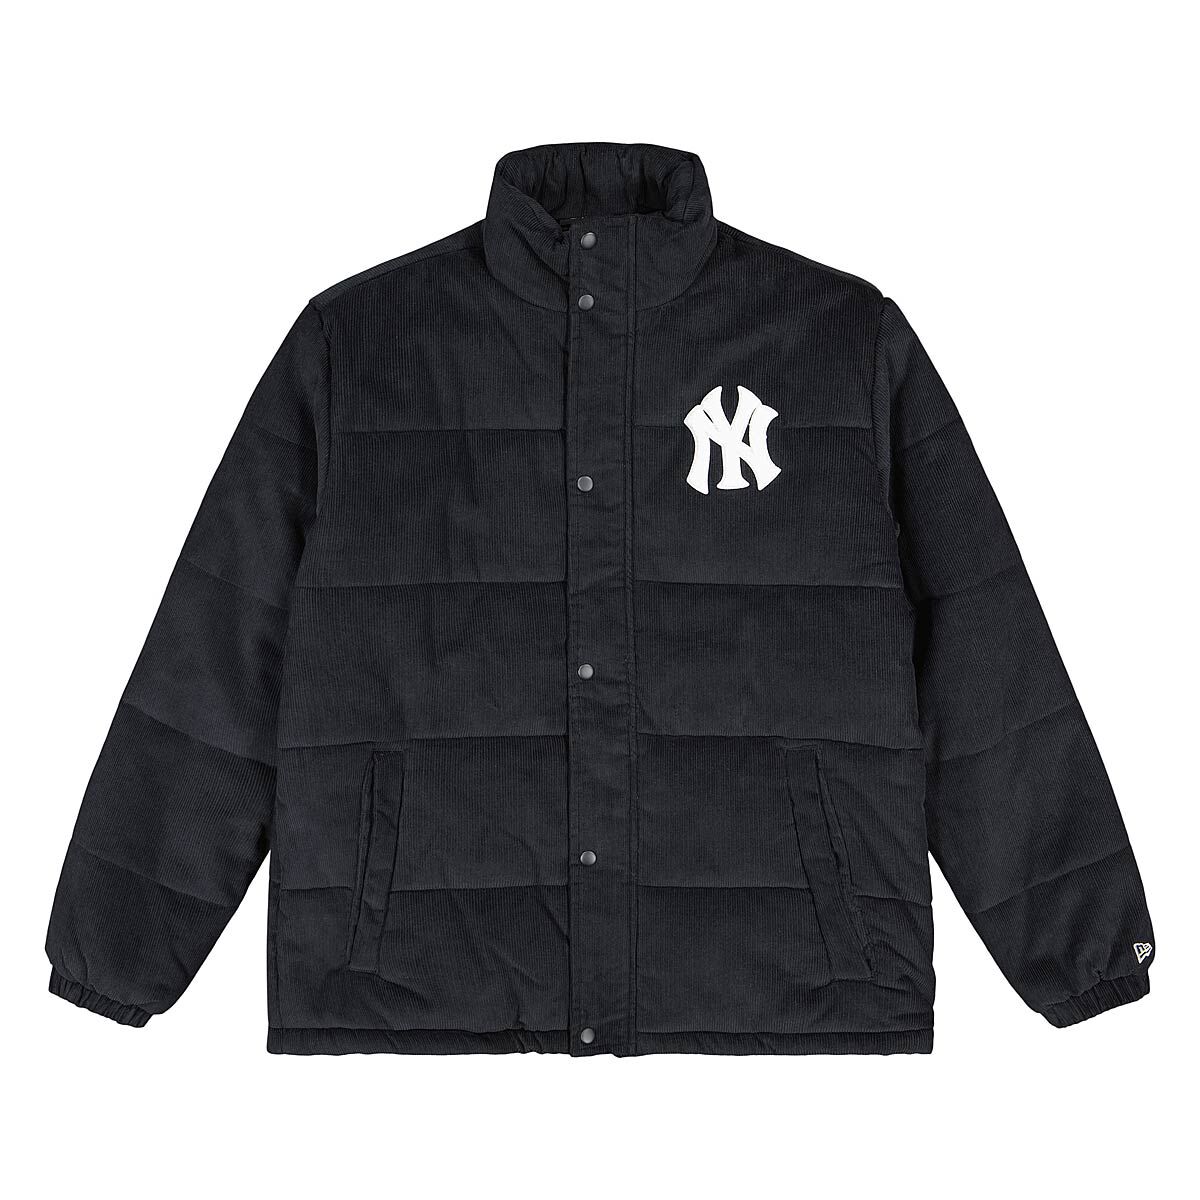 Yankees MLB Puffer Jacket Fesyen Pria Pakaian  Atasan di Carousell